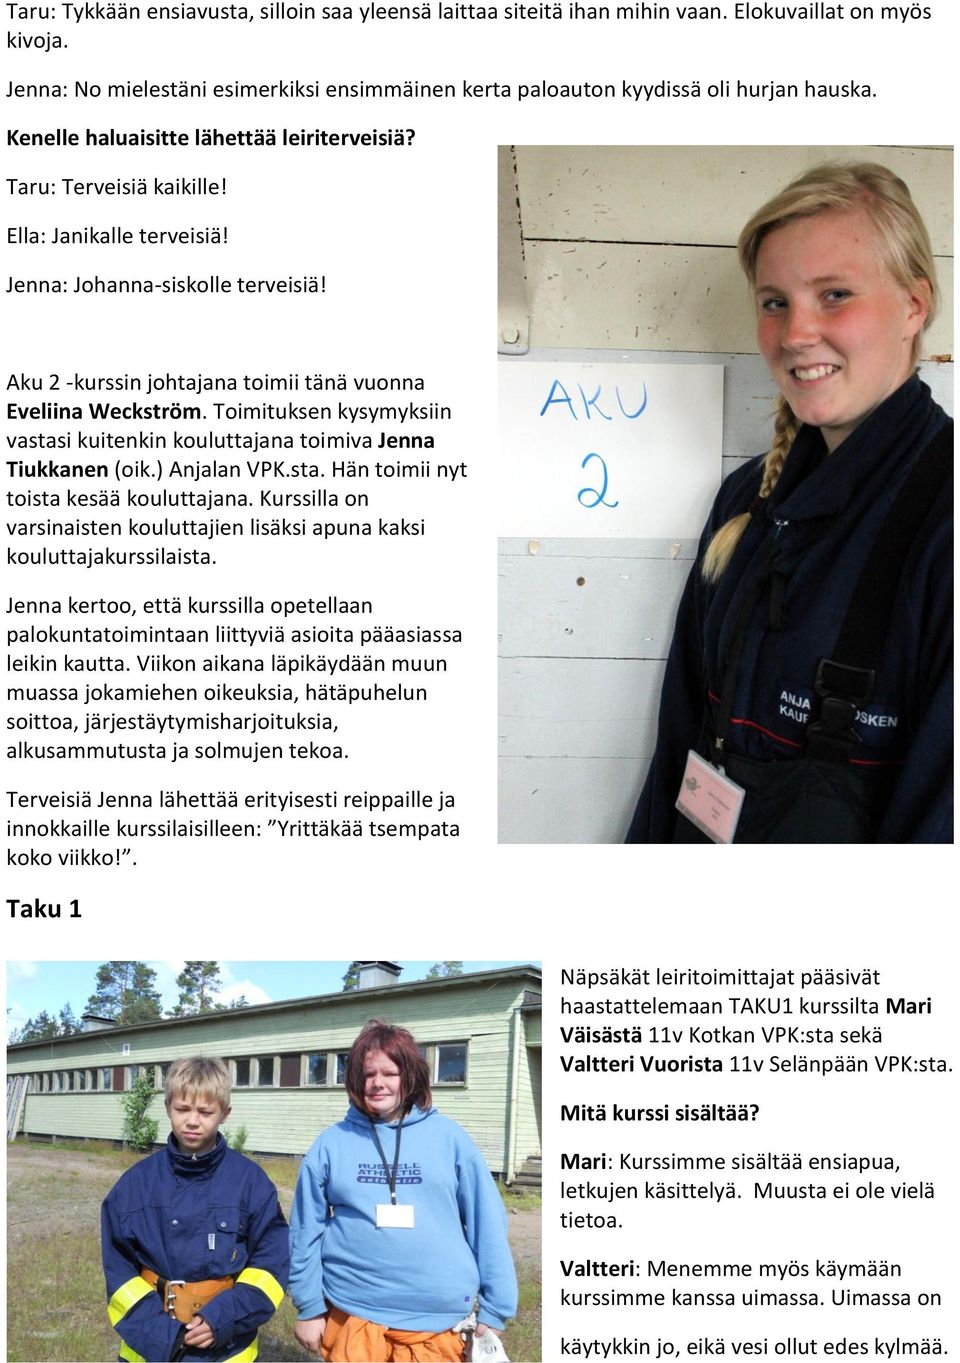 Toimituksen kysymyksiin vastasi kuitenkin kouluttajana toimiva Jenna Tiukkanen (oik.) Anjalan VPK.sta. Hän toimii nyt toista kesää kouluttajana.